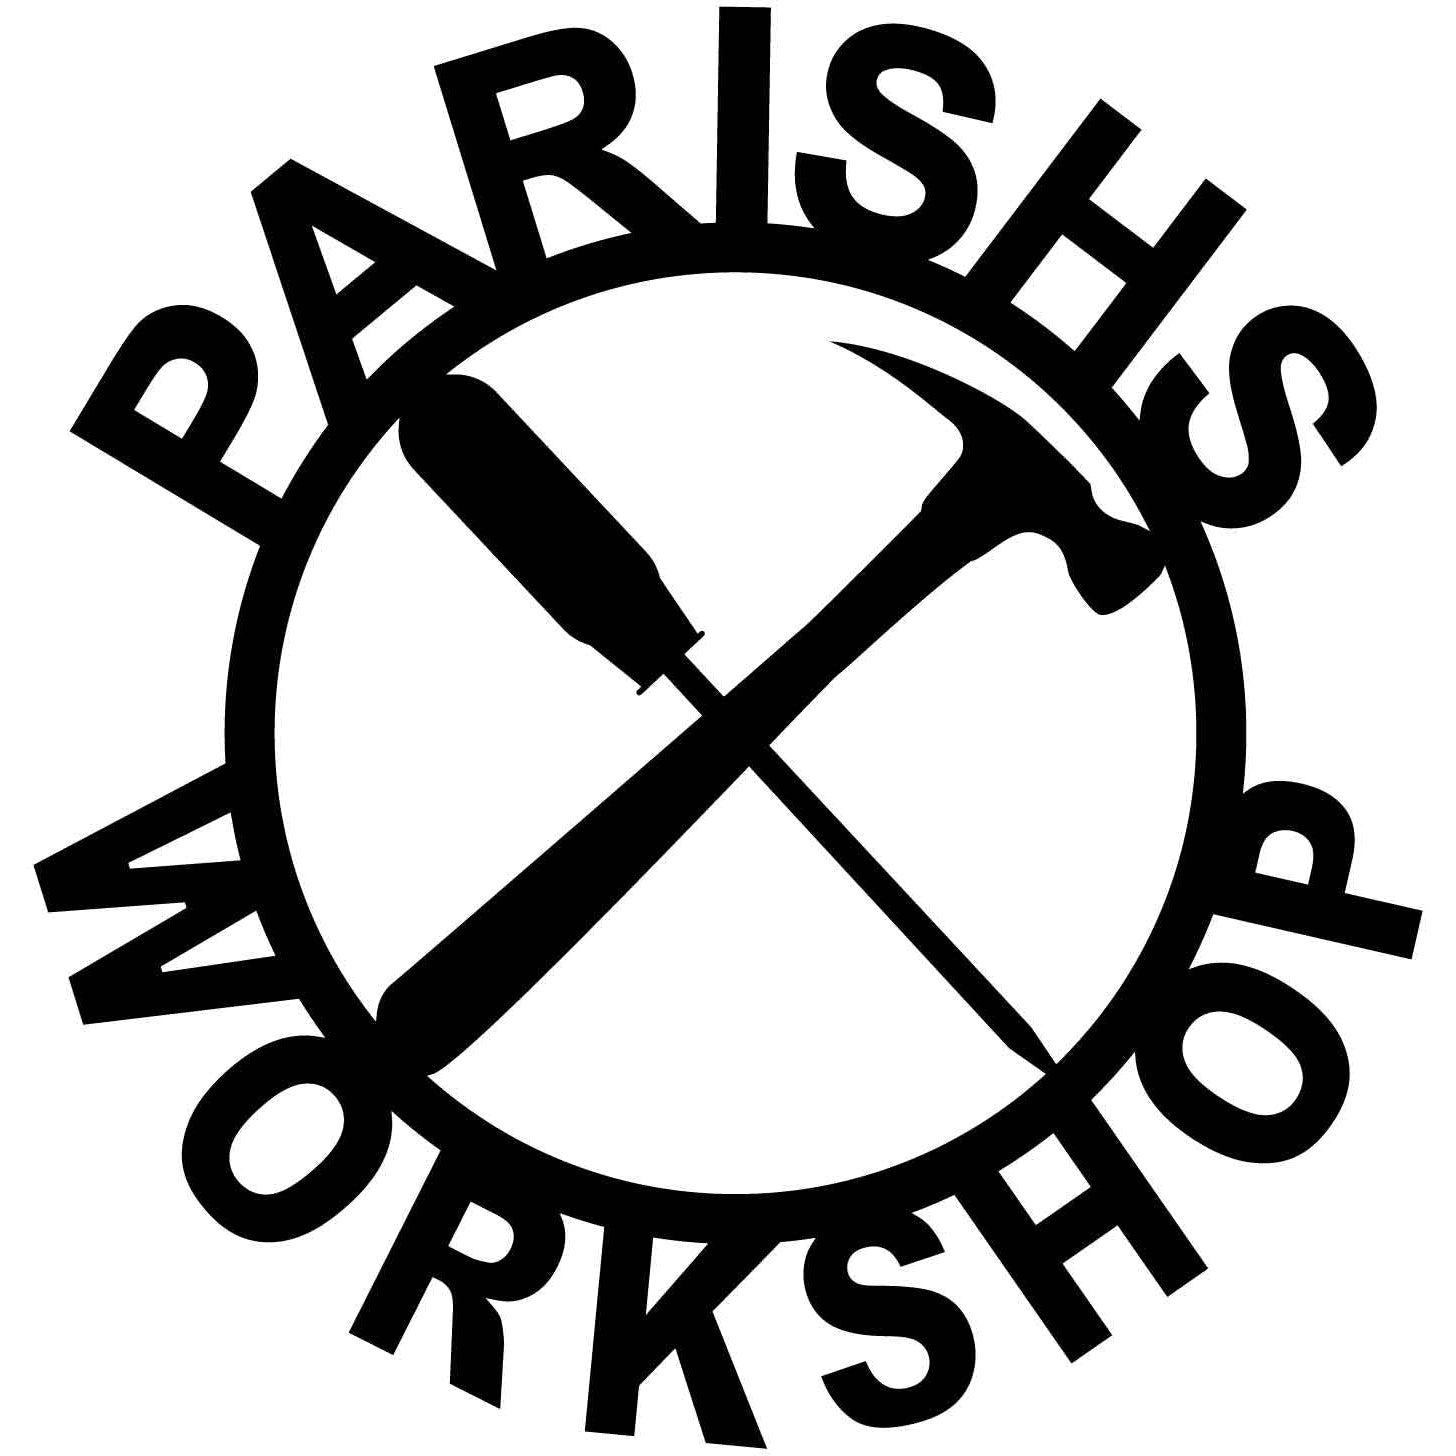 PARISHS WORKSHOP - DXF files Cut Ready CNC Designs -DXFforCNC.com 